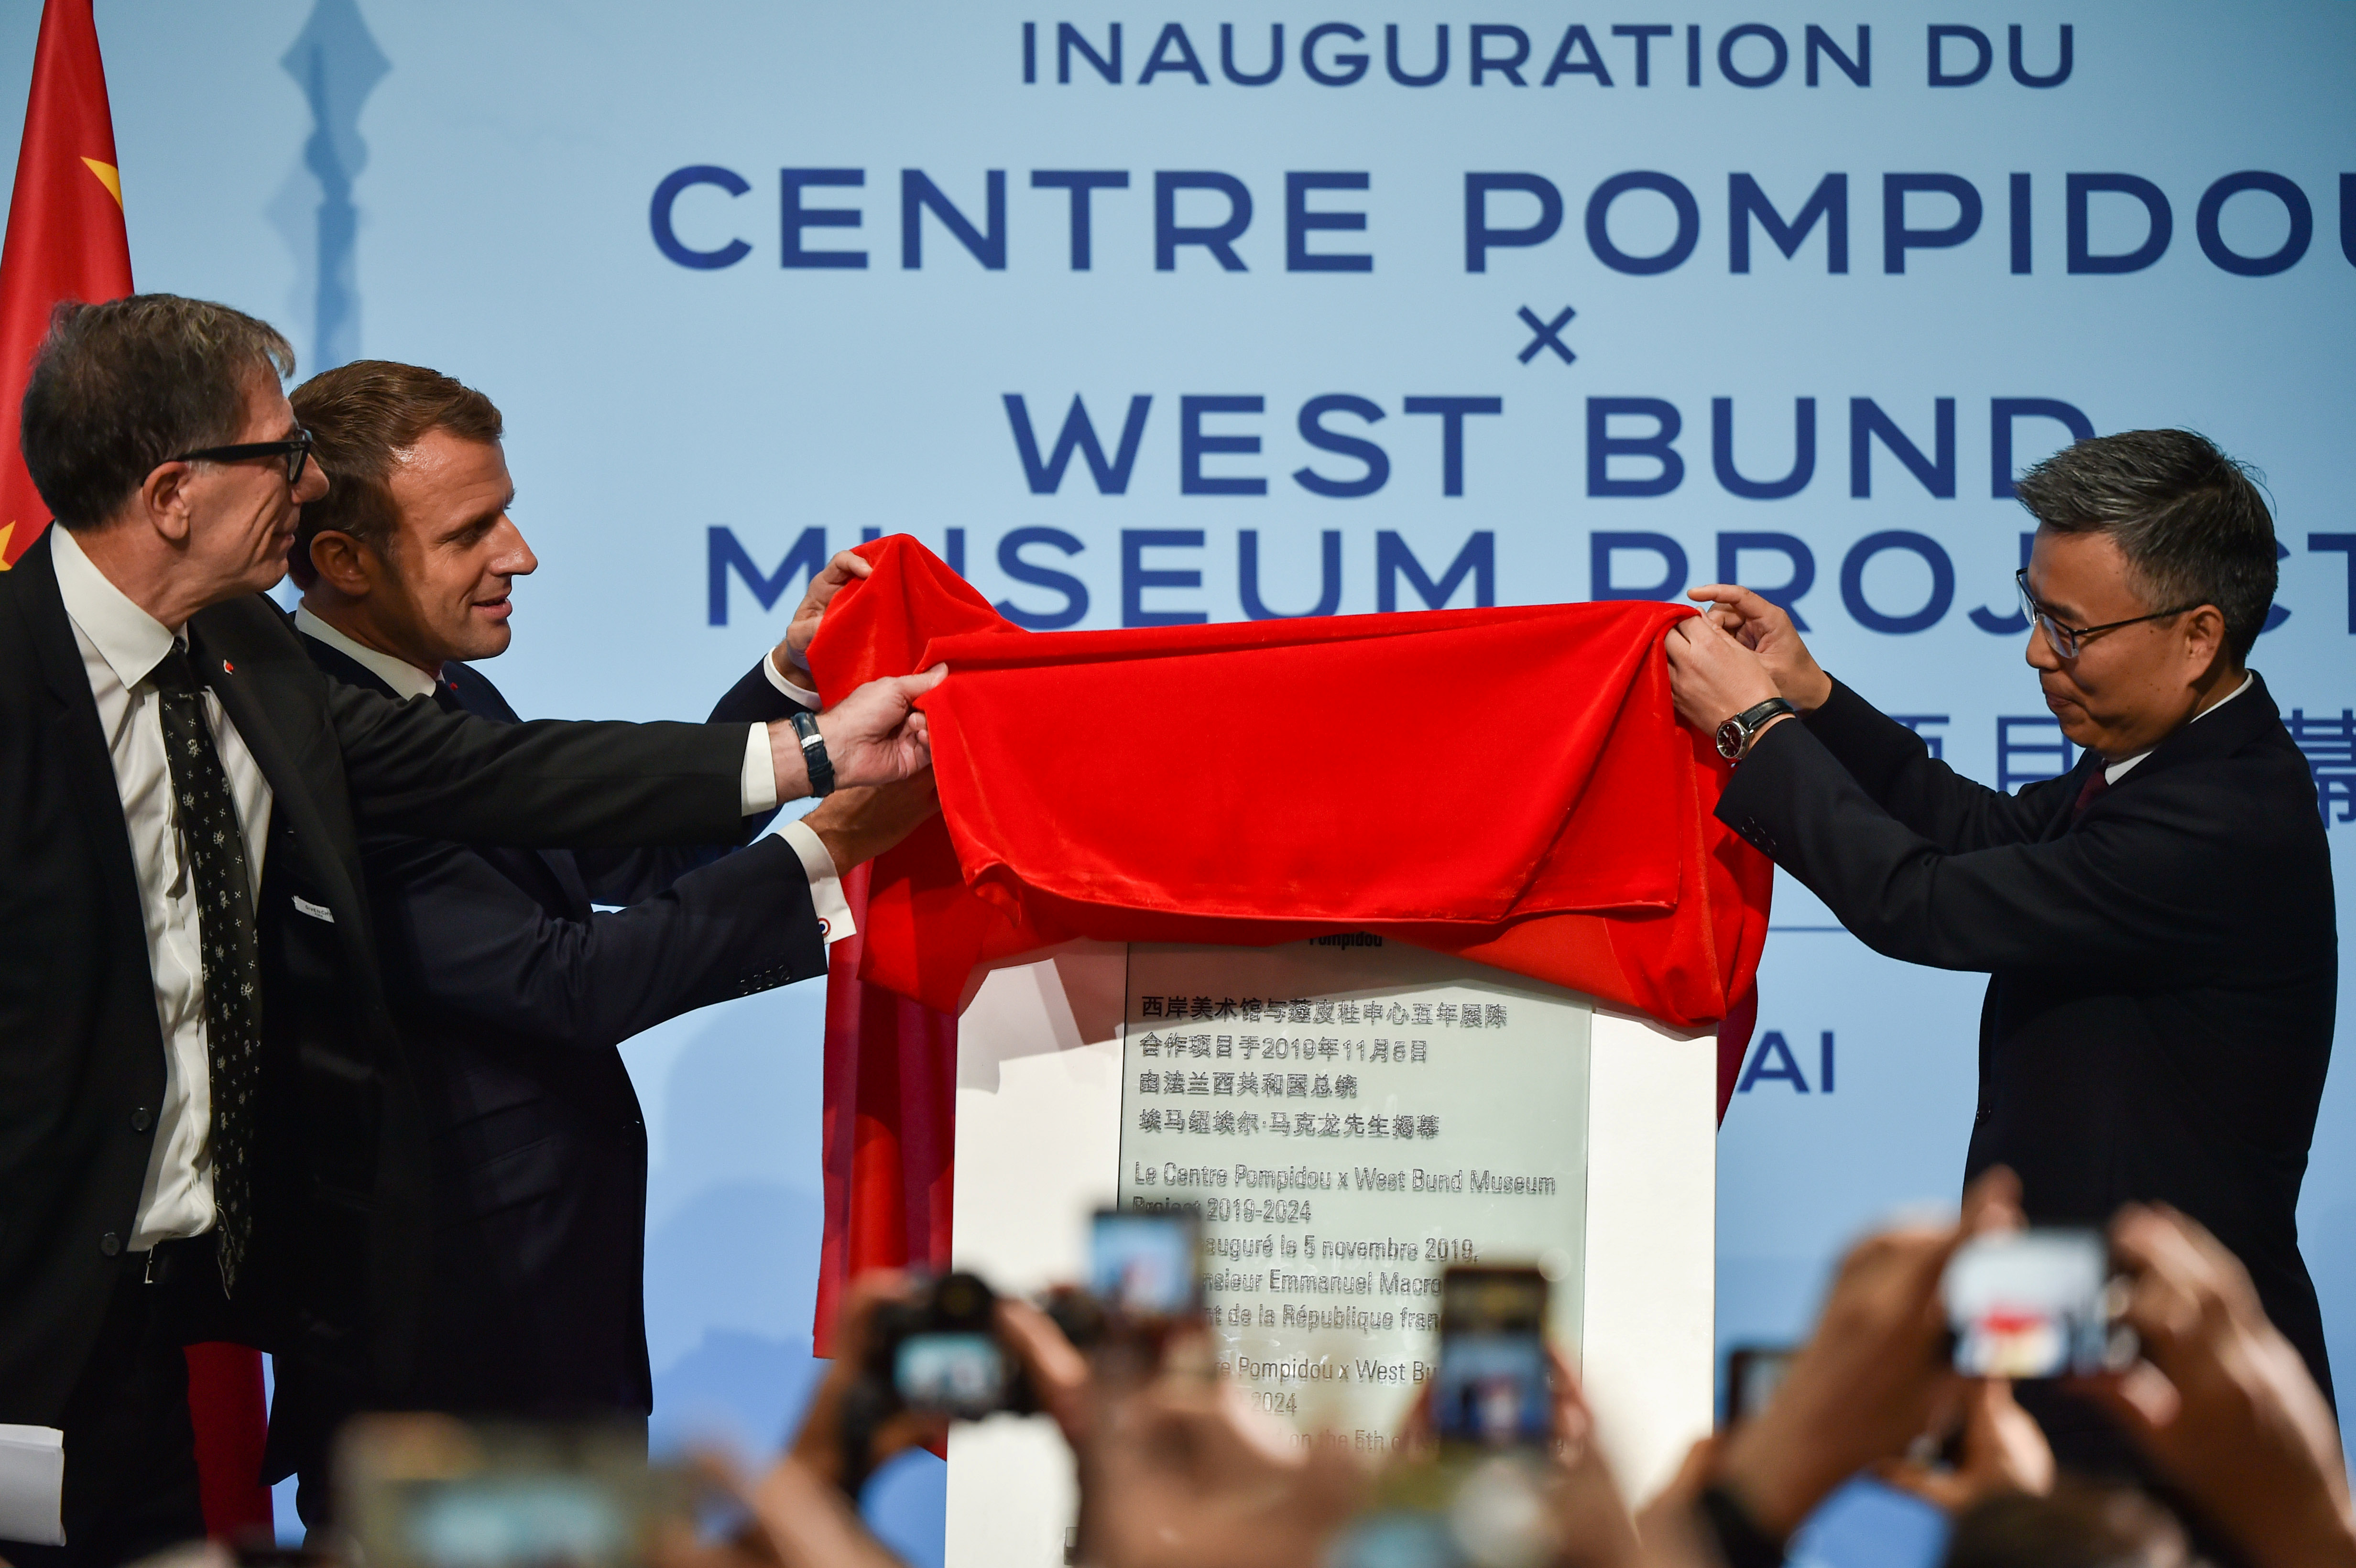 El presidente francés Emmanuel Macron había inaugurado en 2019 en Shanghai el West Bund Museum, la primera sede del Pompidou en Asia. (Hector Retamal/Pool via REUTERS)